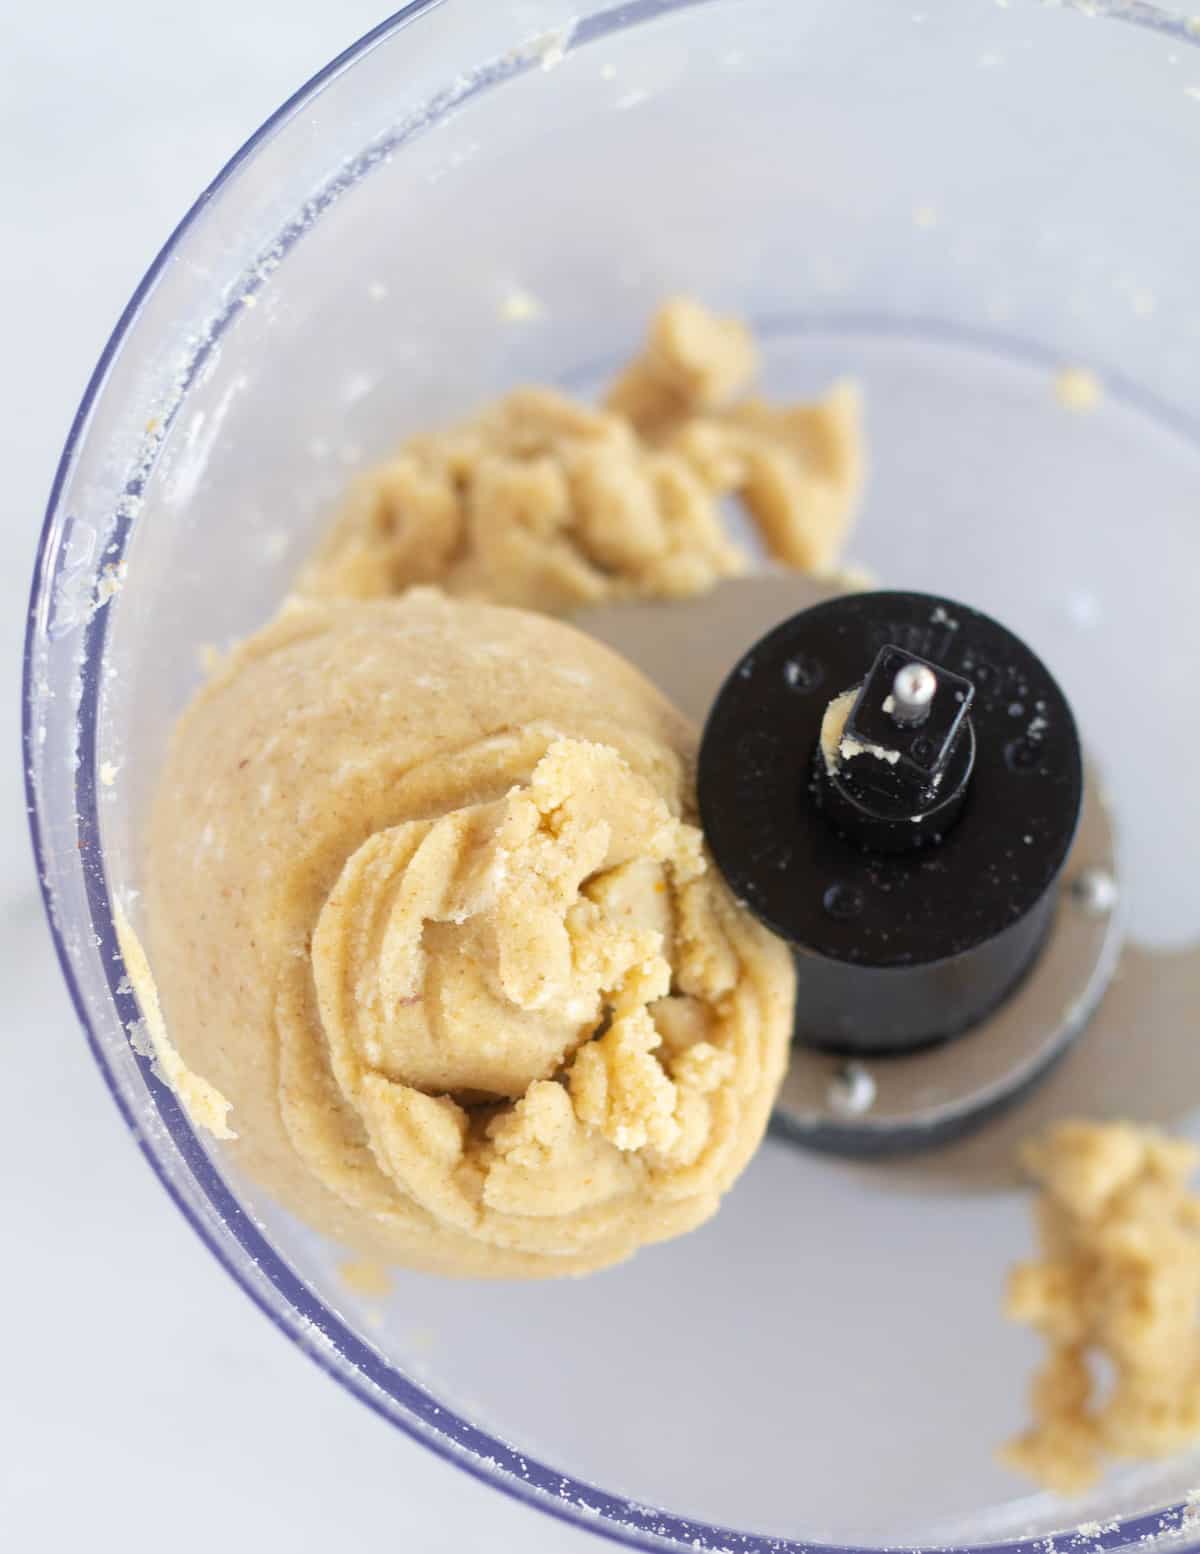 keto pie crust dough in a ball in food processor